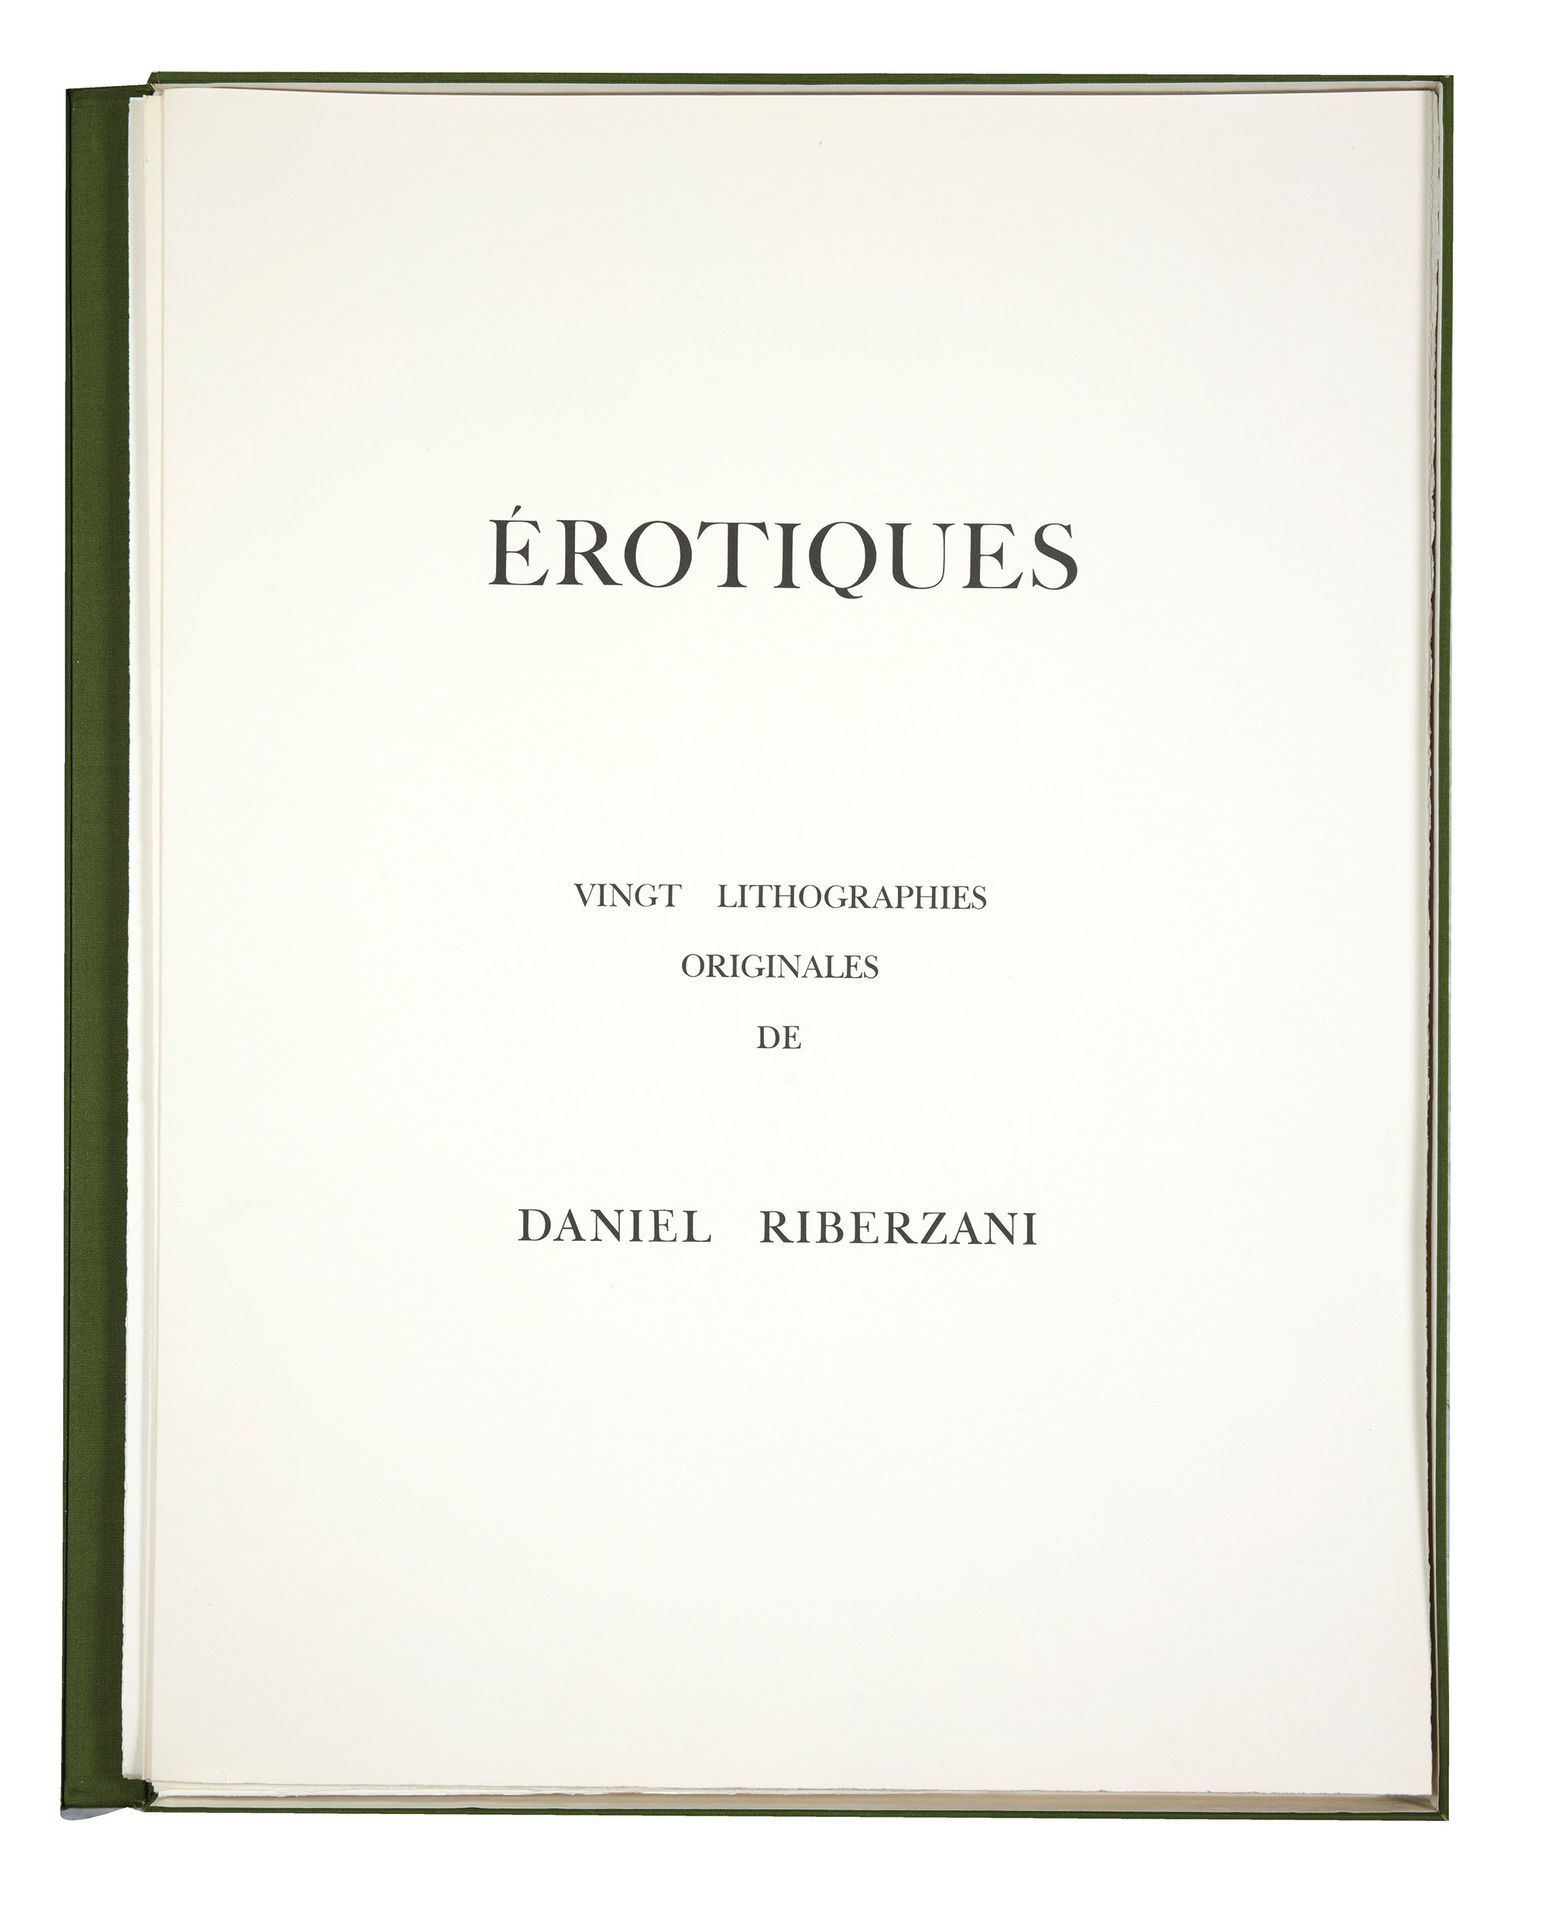 Daniel RIBERZANI Daniel RIBERZANI
Érotiques, vingt lithographies originales, 197&hellip;